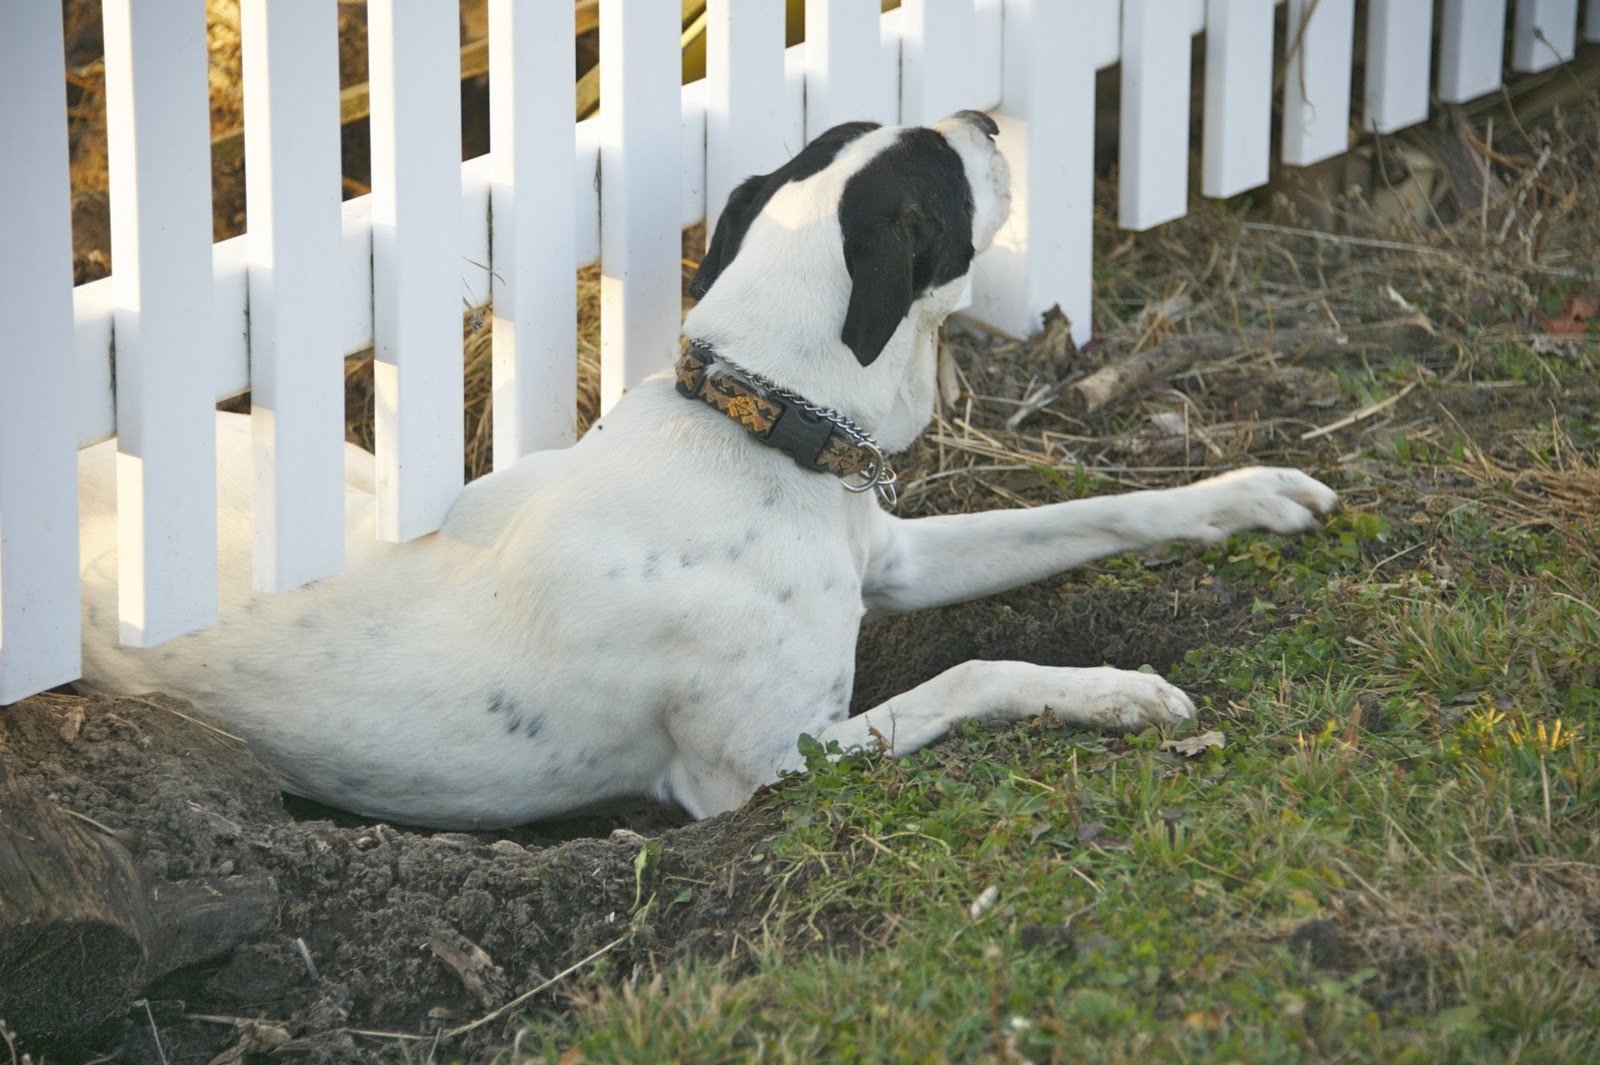 A legfontosabb a jó kerítés, amin se alul, se felül nem jut ki a kutya